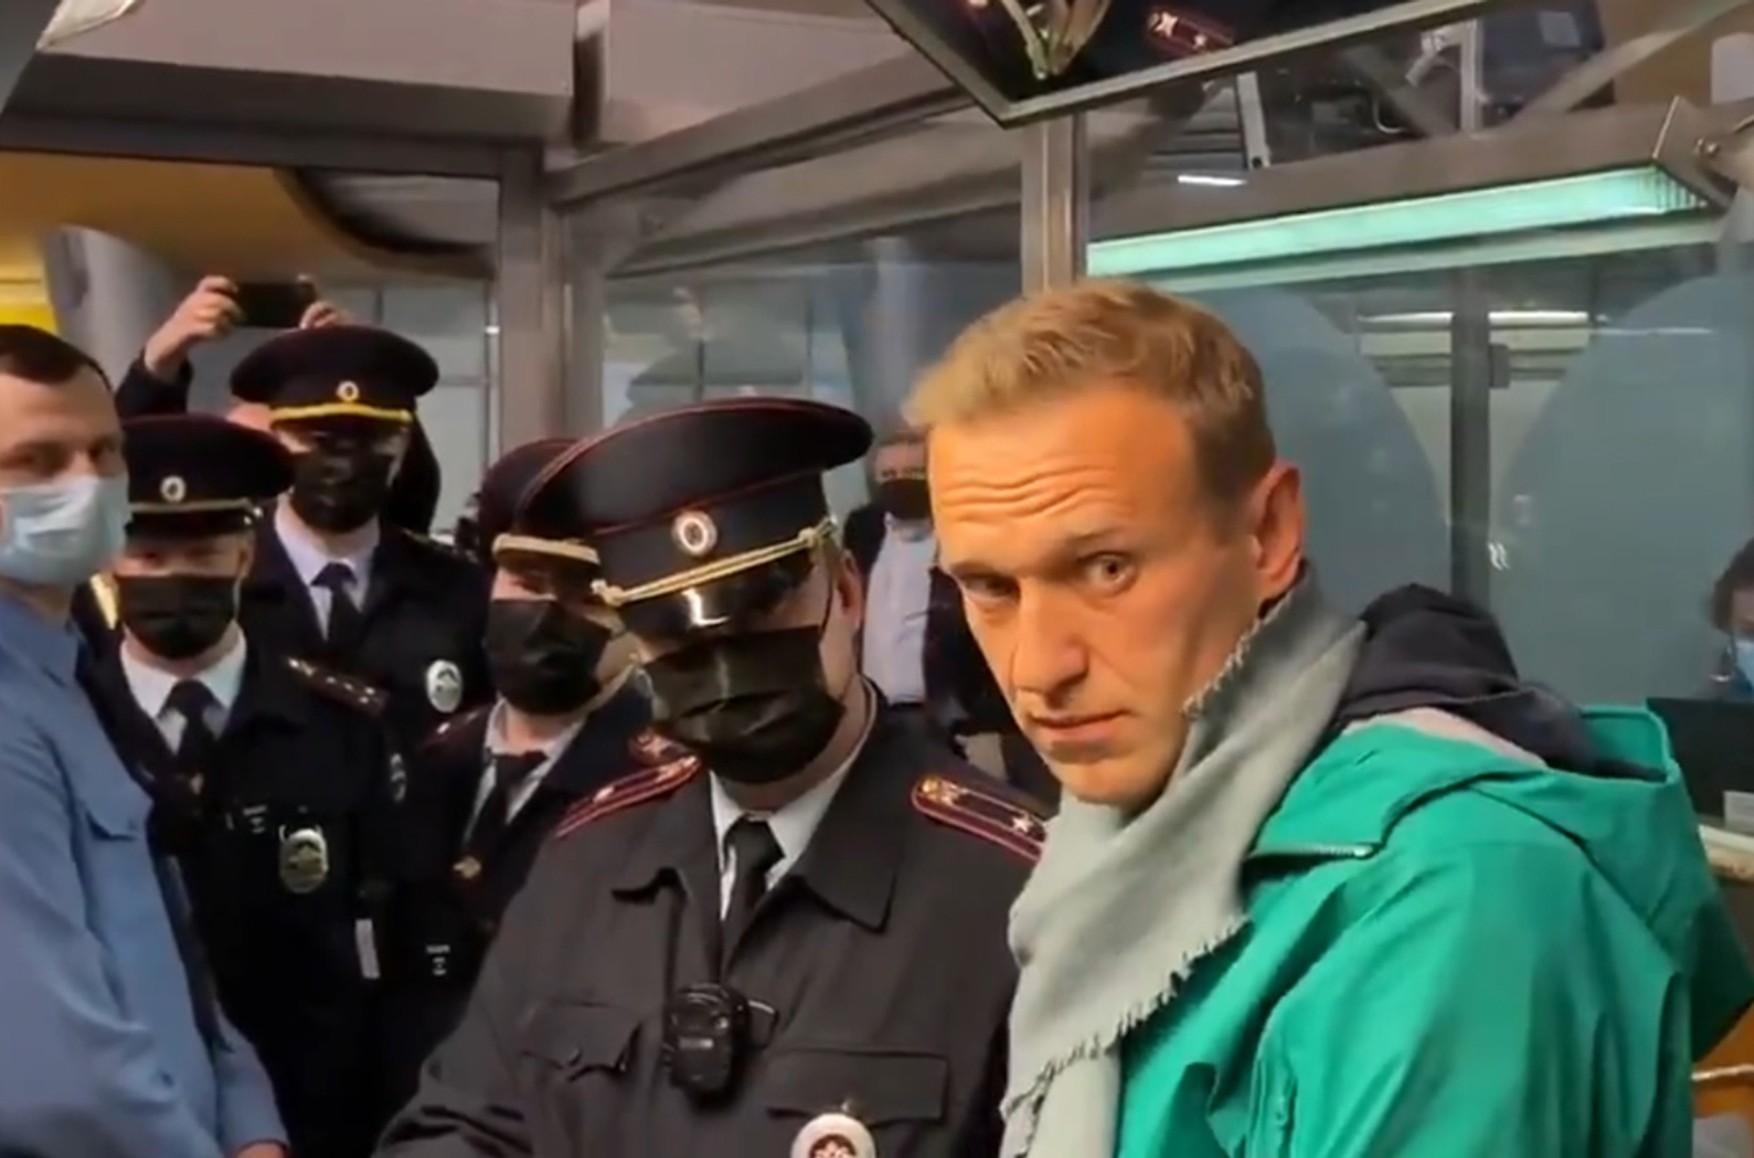 Amnesty International визнала Олексія Навального в'язнем совісті